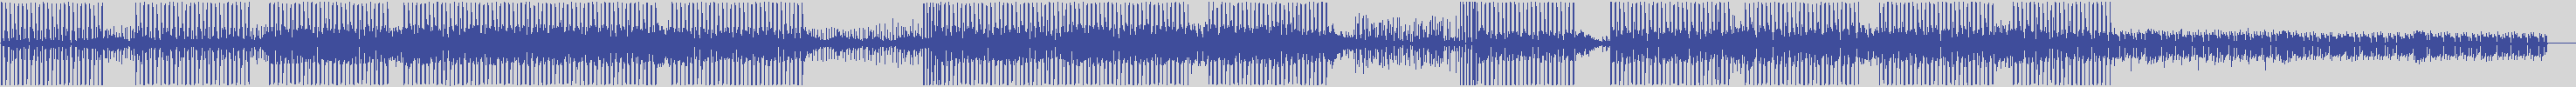 noclouds_chillout [NOC035] Deep Tune - Flute [Original Mix] audio wave form